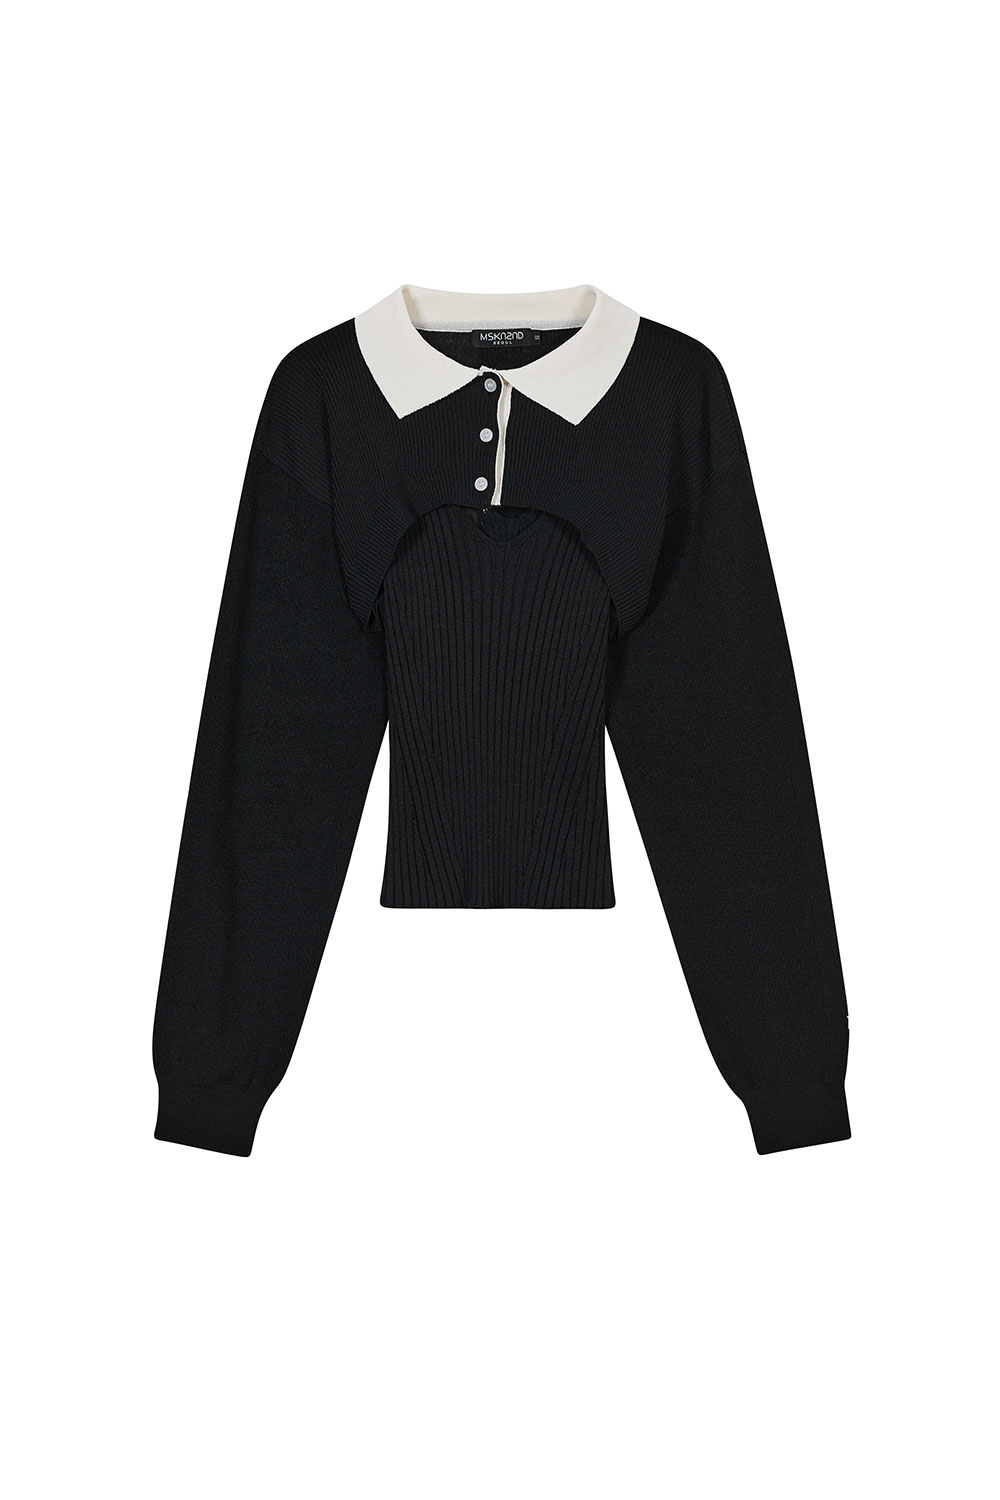 [이채연 착용] 럭비 레이어드 스웨터 블랙